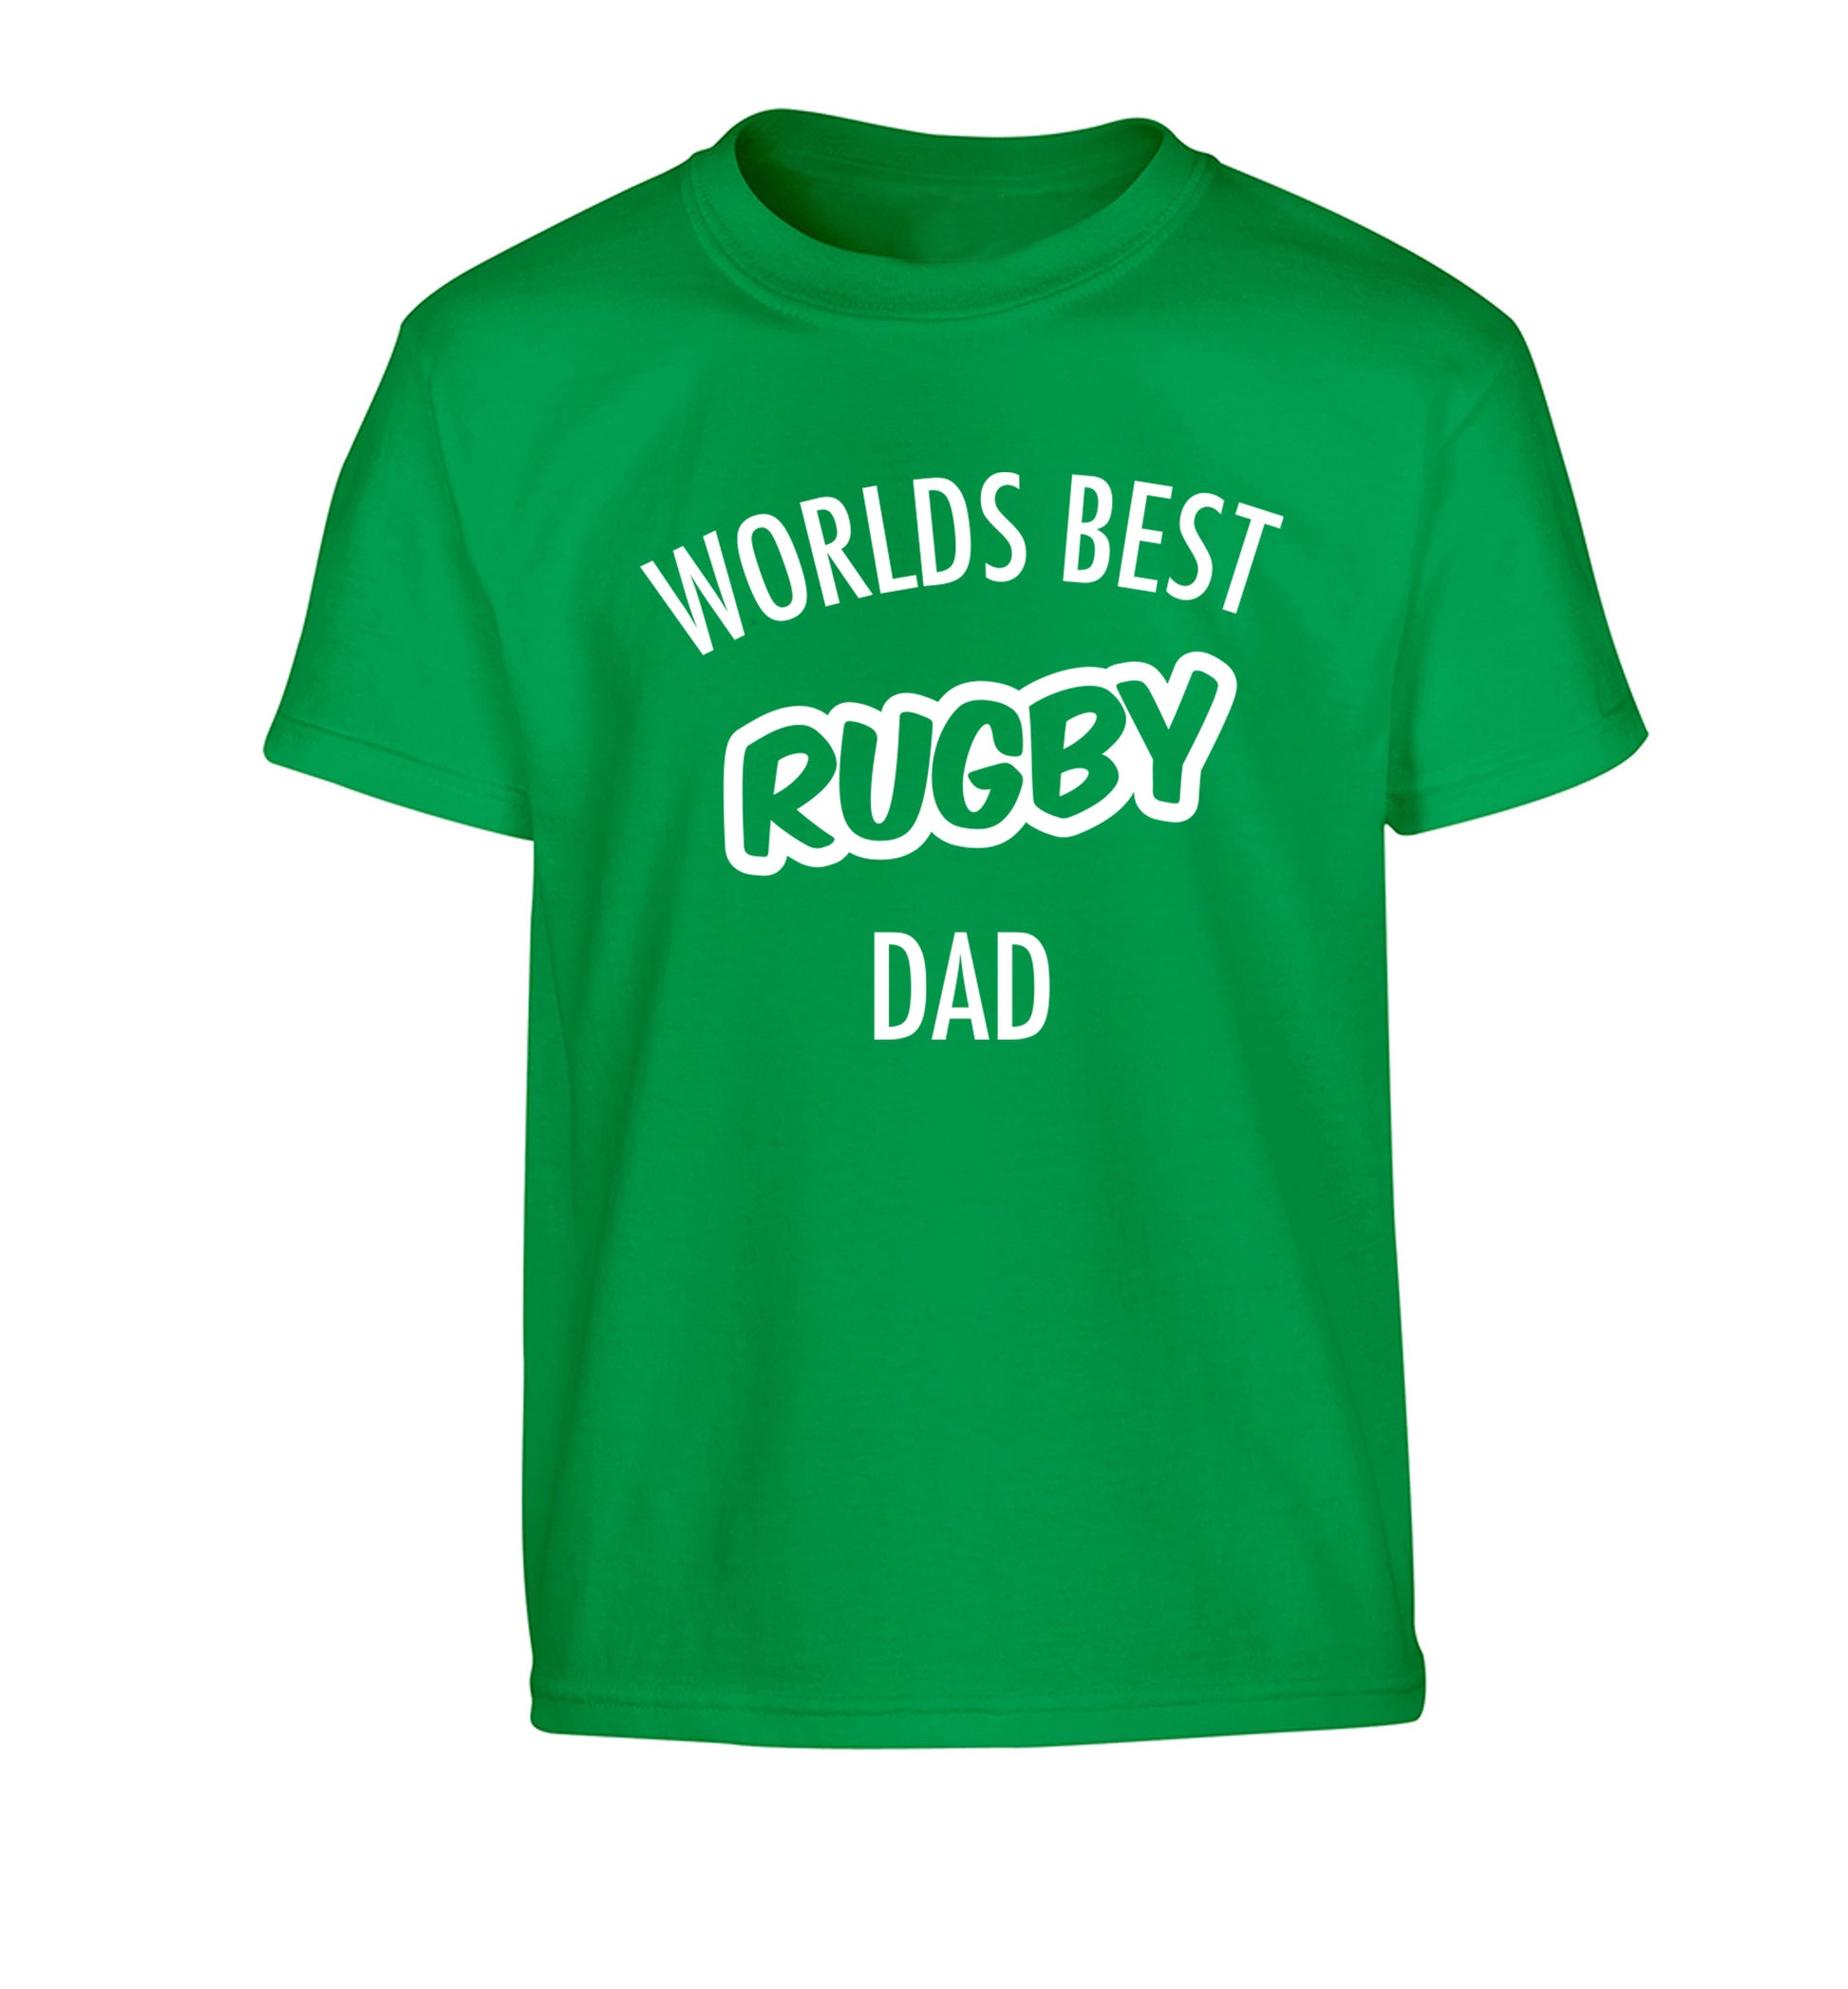 Worlds best rugby dad Children's green Tshirt 12-13 Years